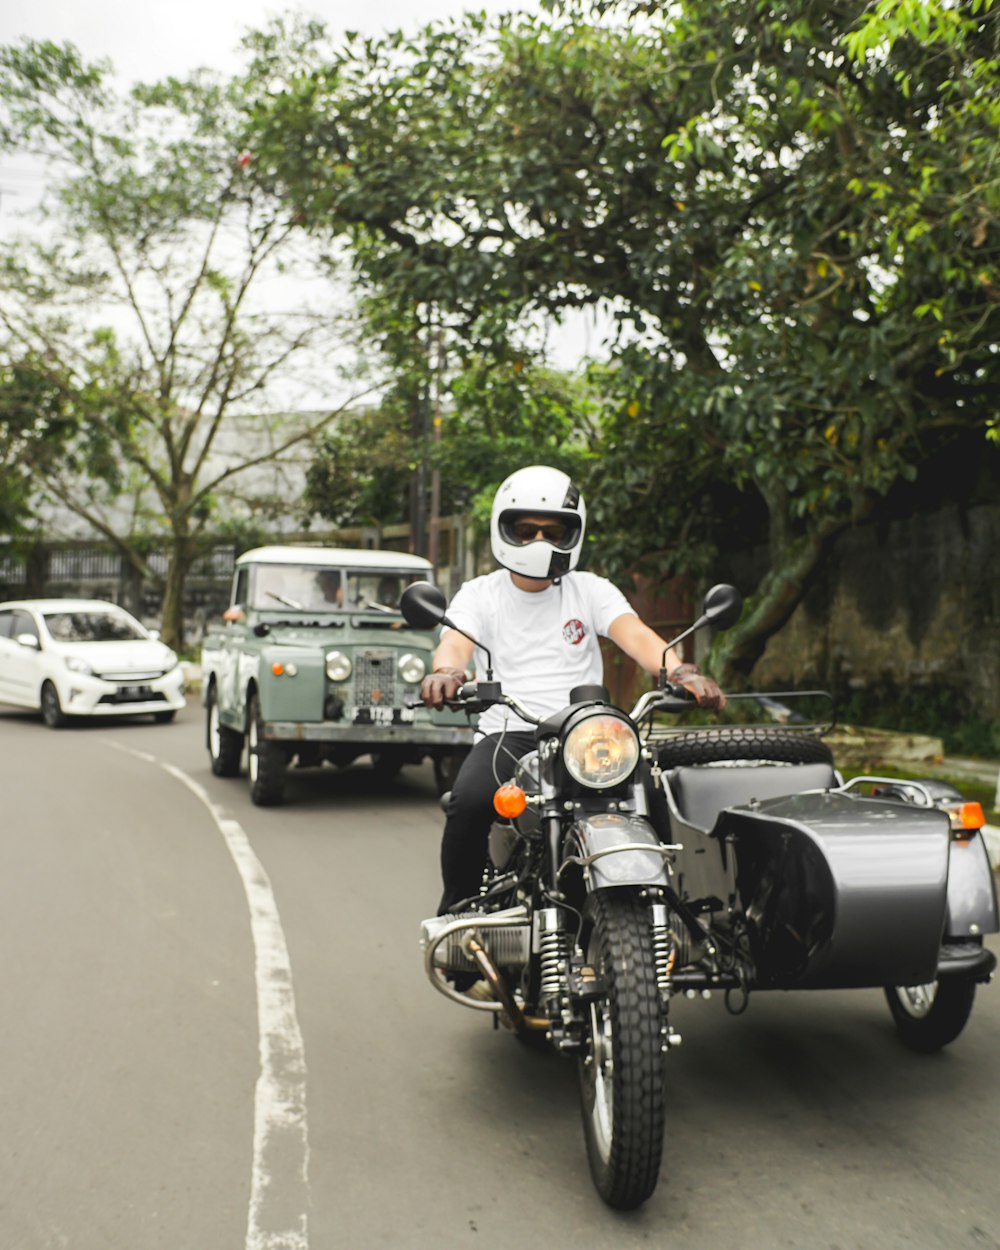 Mann mit weißem Helm fährt tagsüber Motorrad auf der Straße